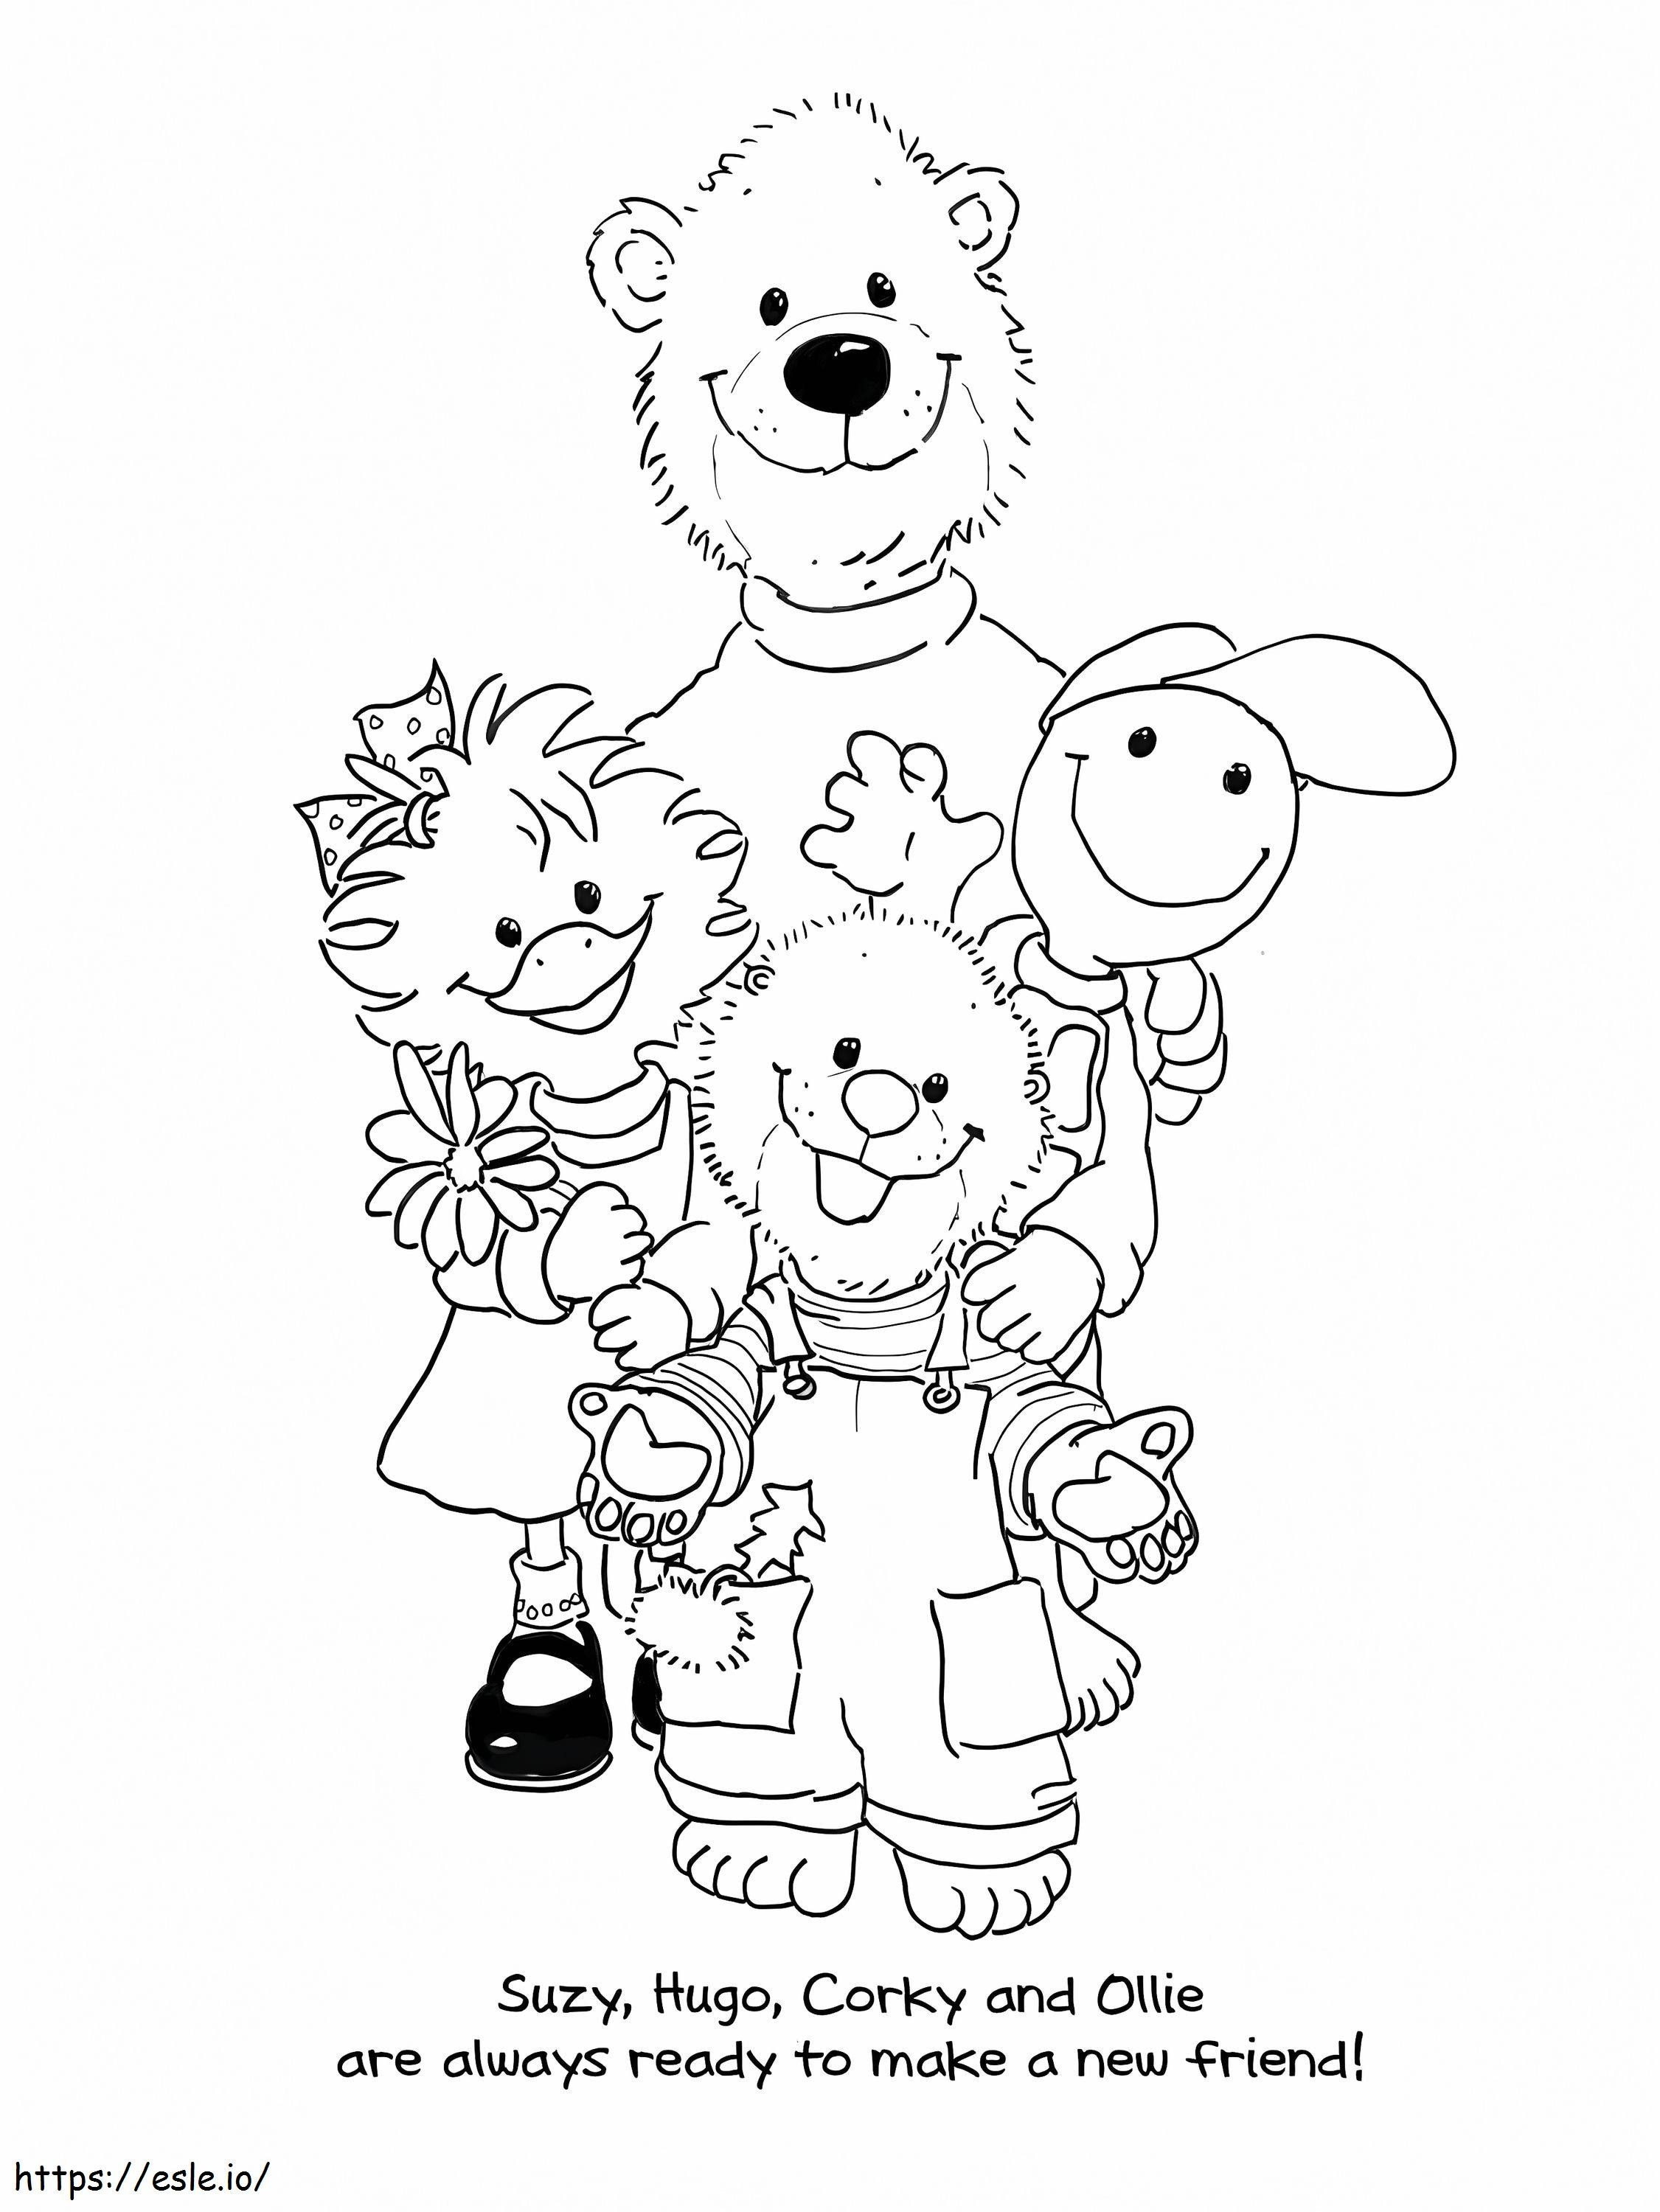 Personajes del zoológico de Suzy 4 para colorear